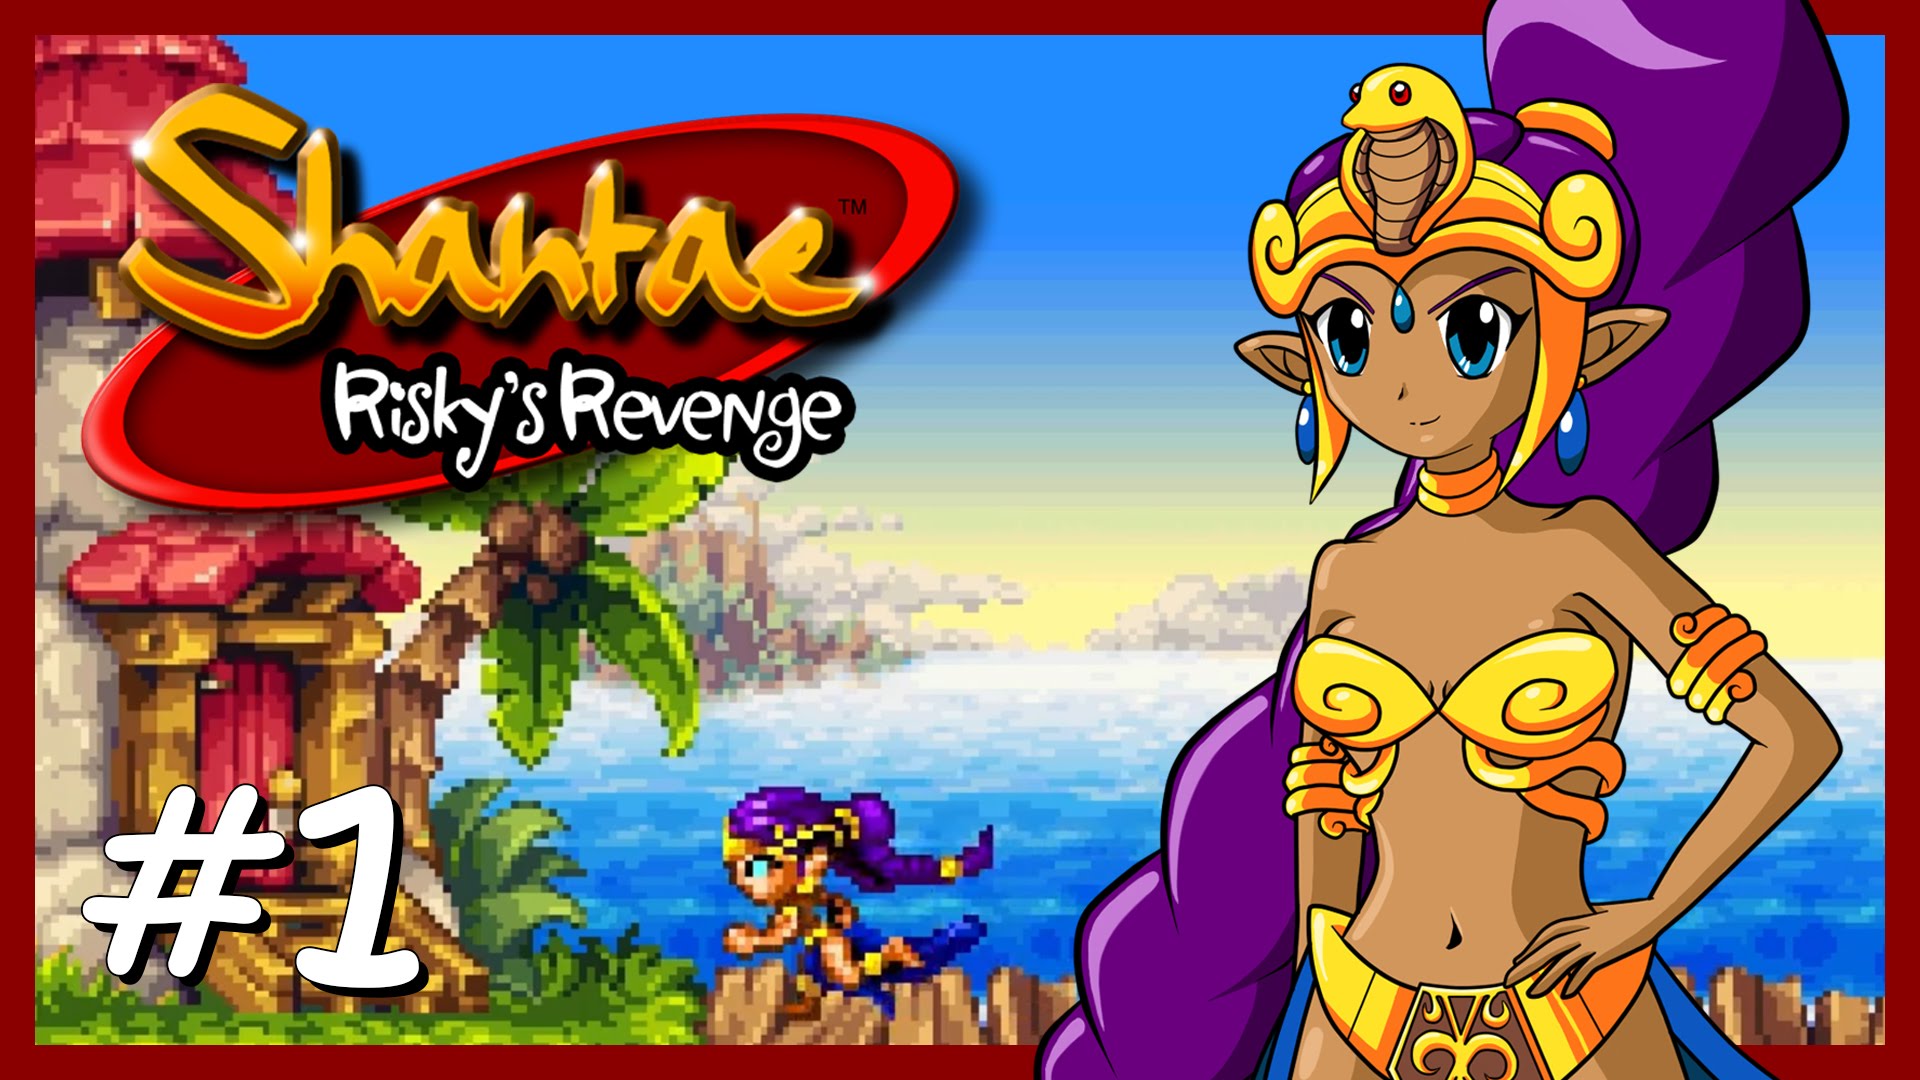 Amazing Shantae: Risky's Revenge Pictures & Backgrounds